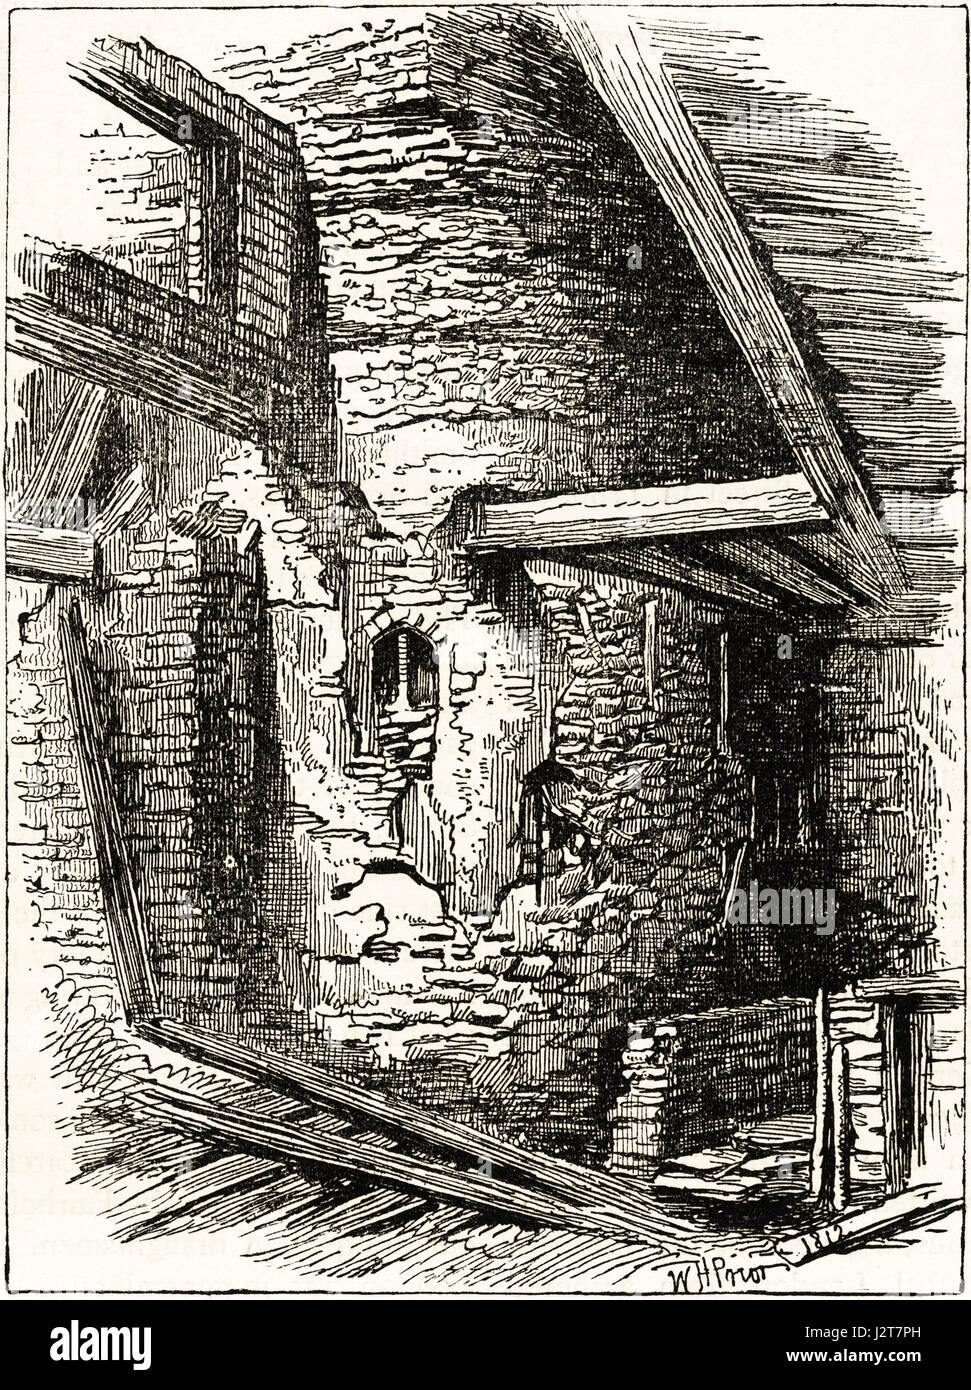 Section de l'ancien mur romain en 1812 près de Falcon Square, Londres. La gravure de l'époque victorienne circa 1880. Banque D'Images